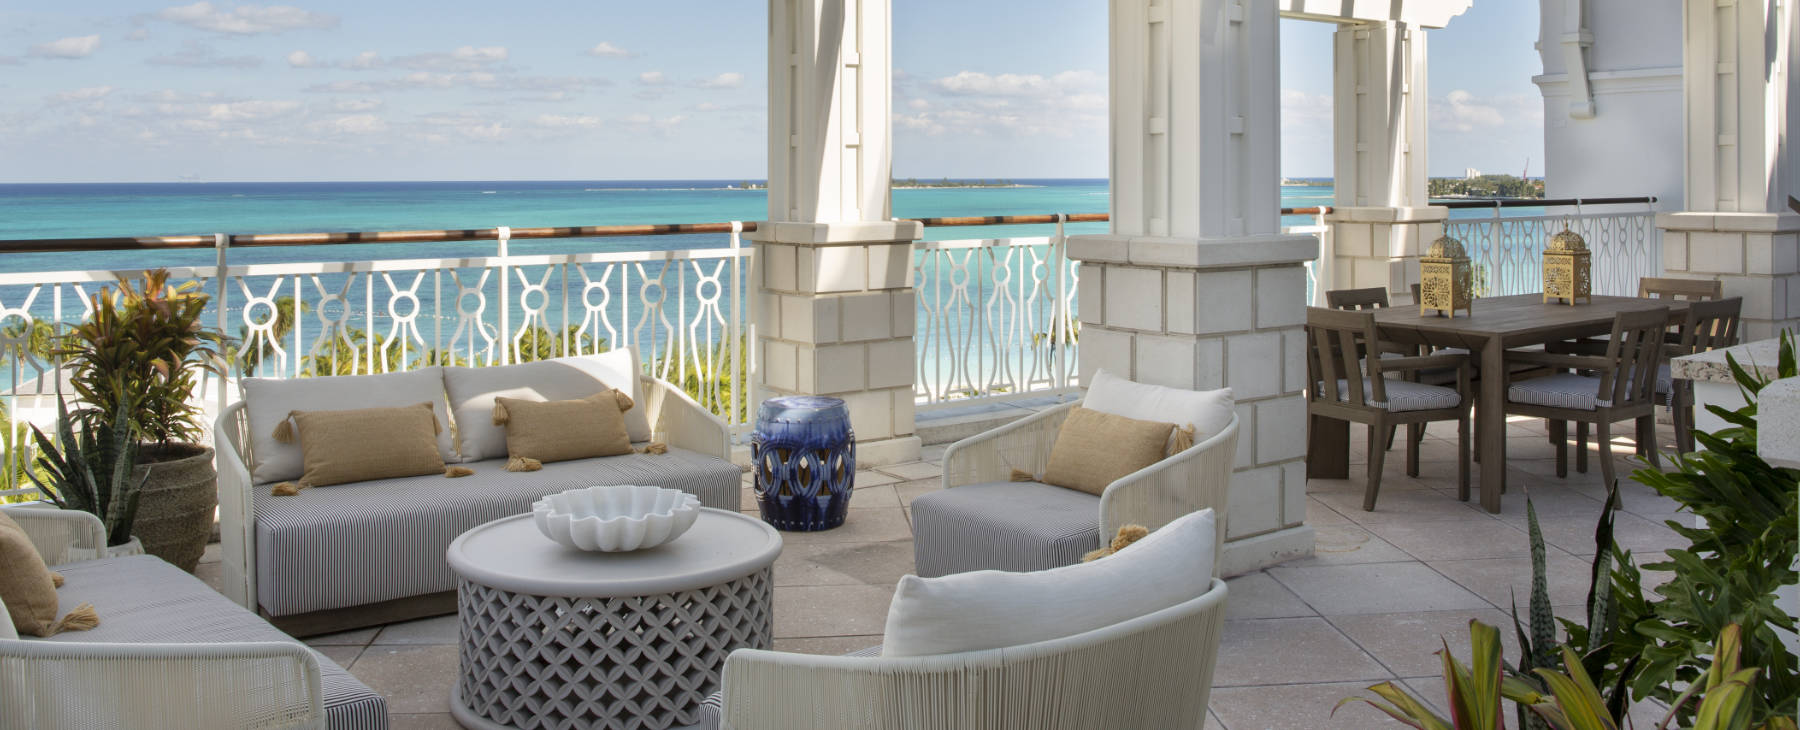 Luxusreise Bahamas Karibik Rosewood Baha Mar Argentum Reisen